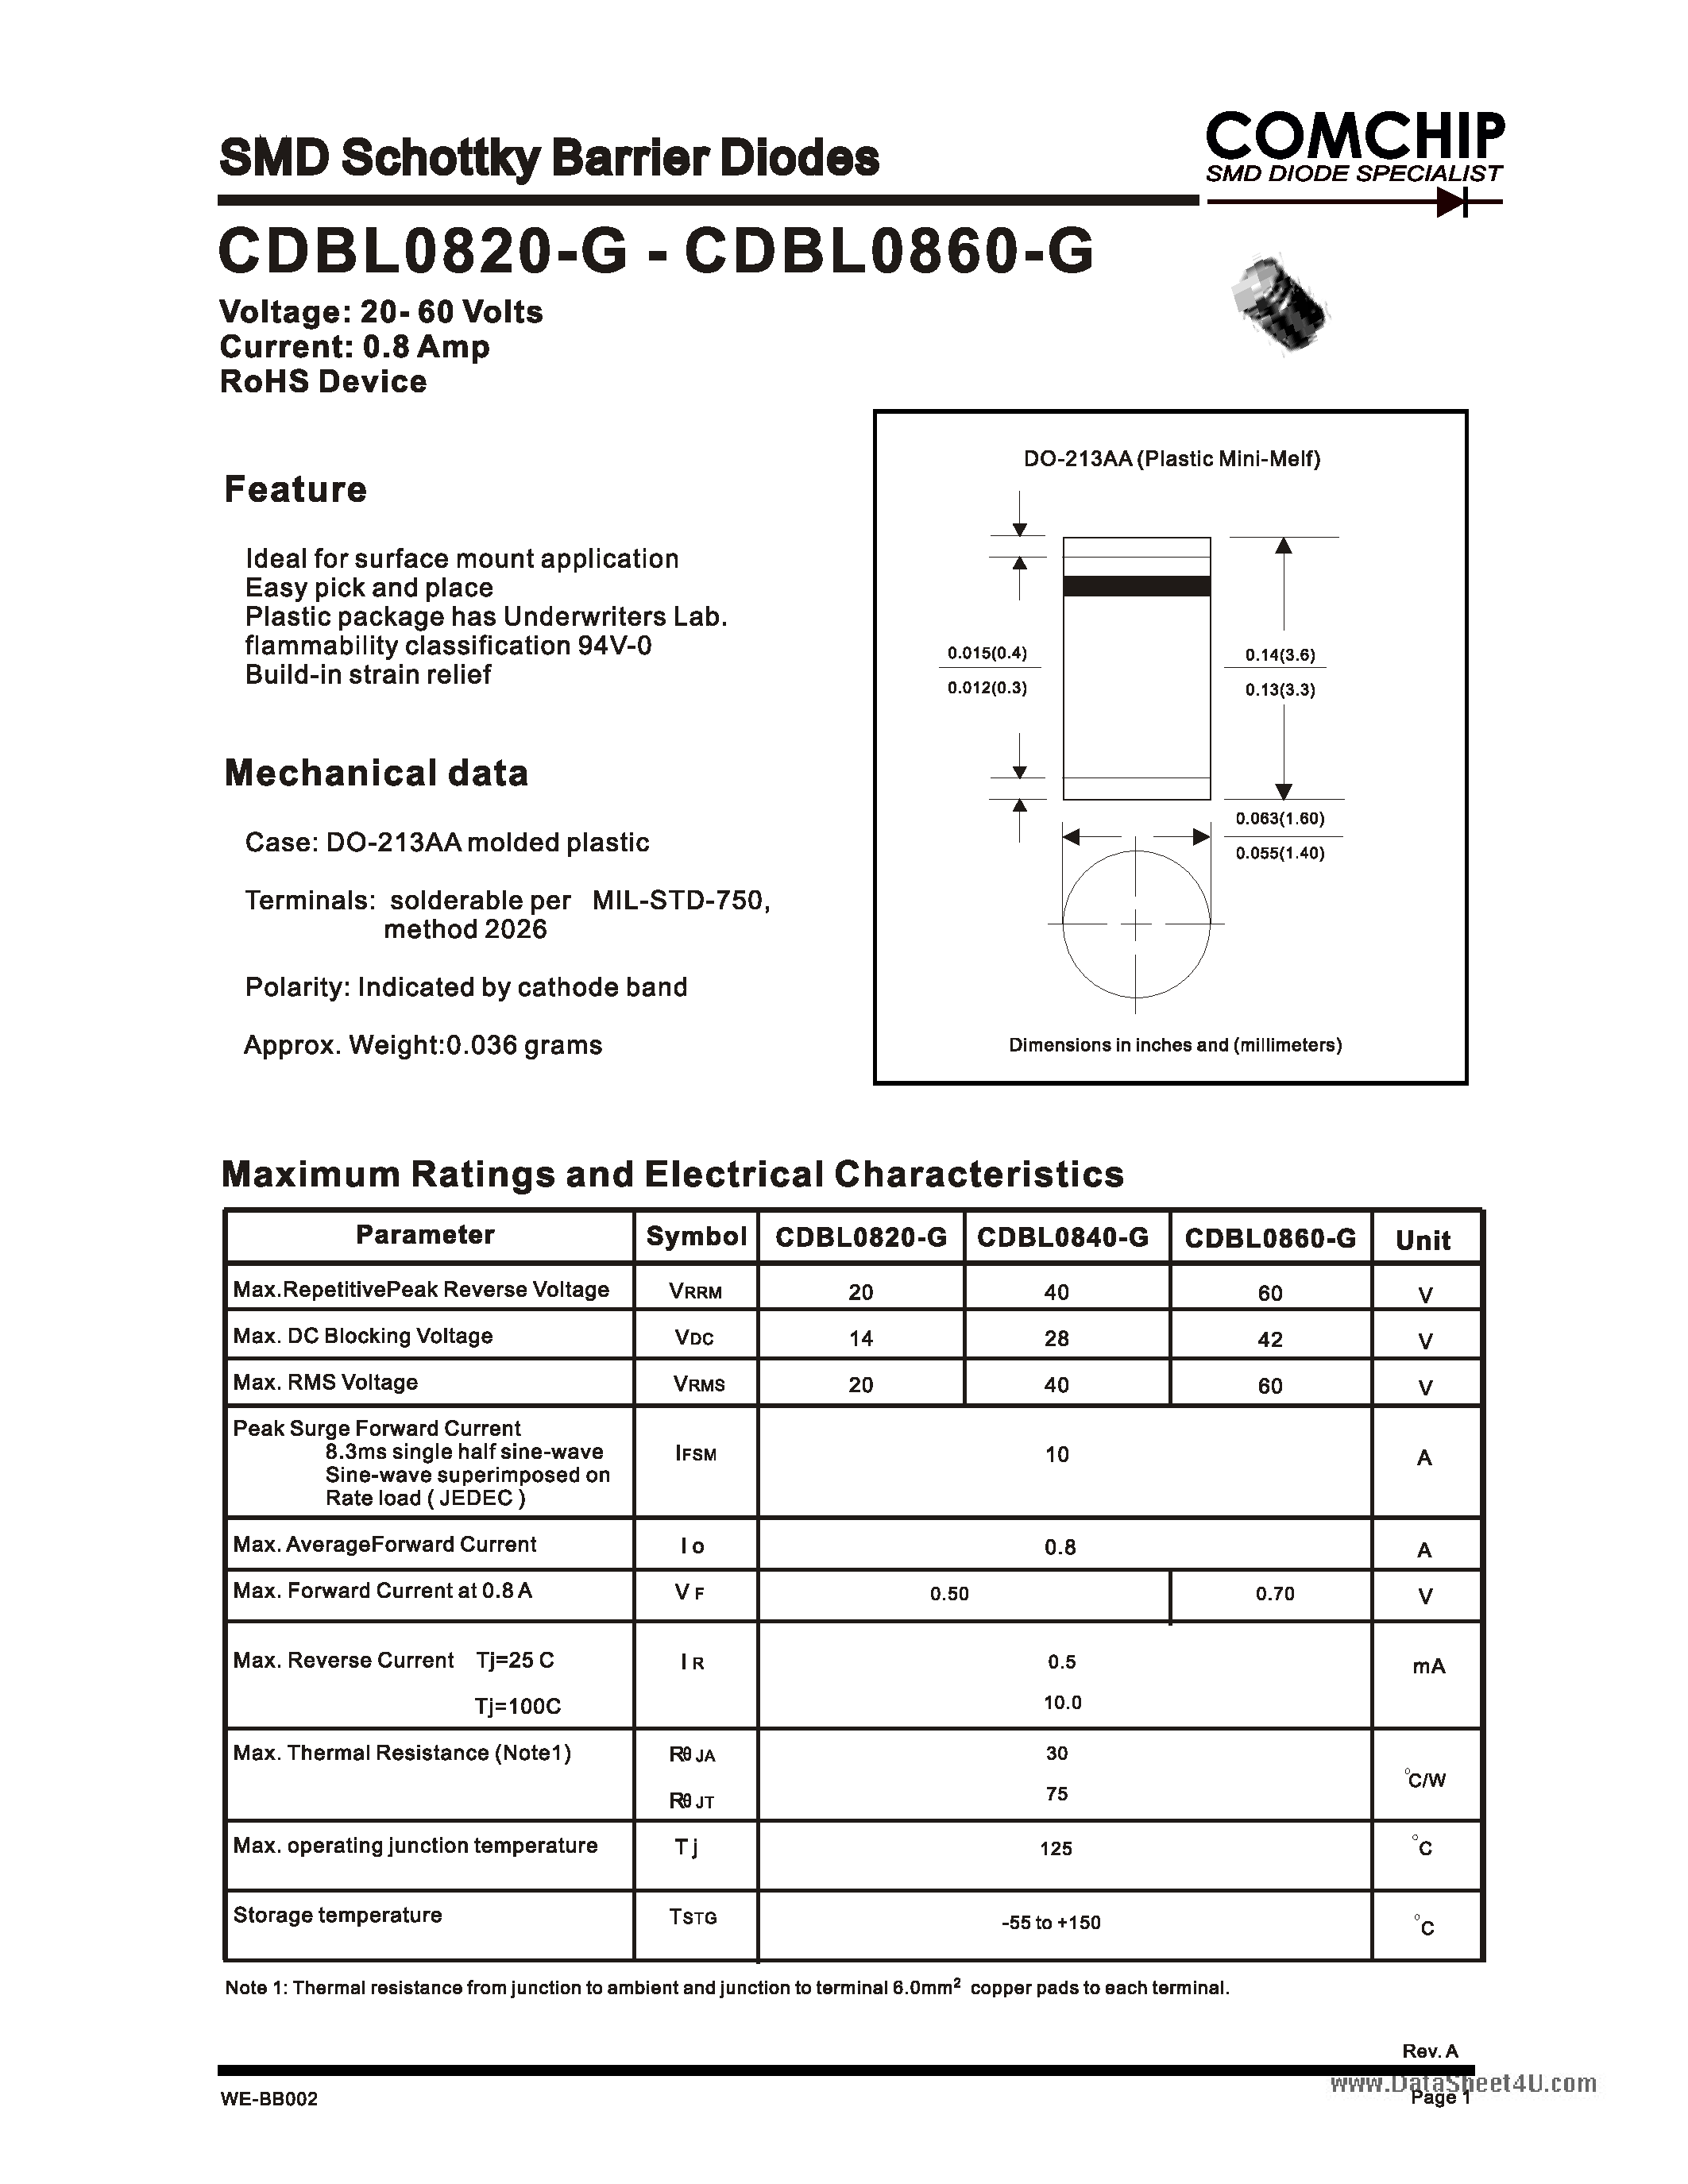 Даташит CDBL0820-G - (CDBL0820-G - CDBL0860-G) SMD Schottky Barrier Diode страница 1